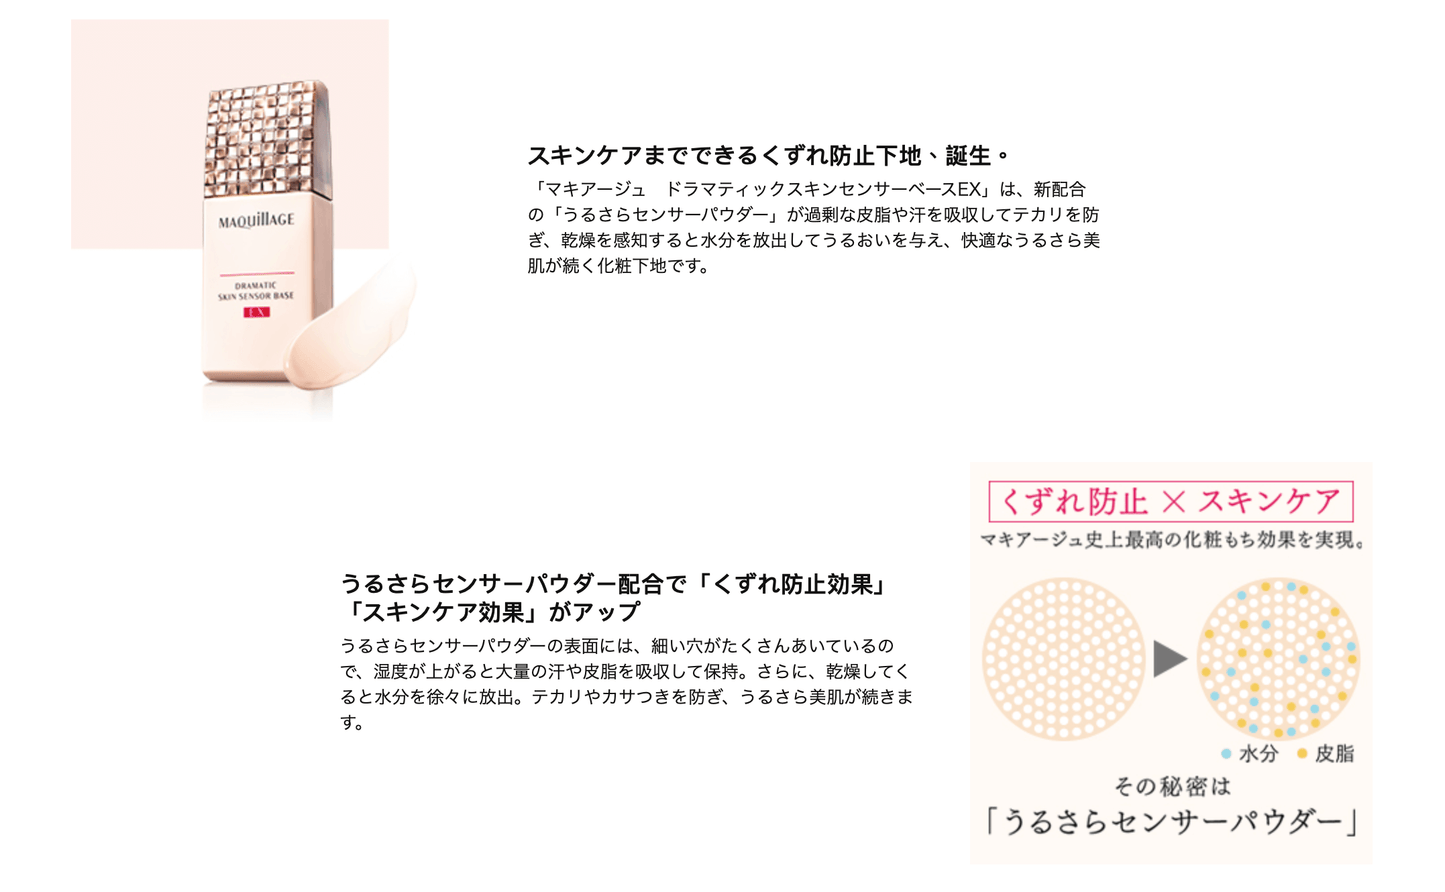 日本 SHISEIDO 資生堂 新版 MAQUILLAGE 絕色鎖水持久底霜 DRAMATIC SKIN SENSOR BASE EX (SPF25/PA+++) - 東京雜貨店 Chocodream_JP